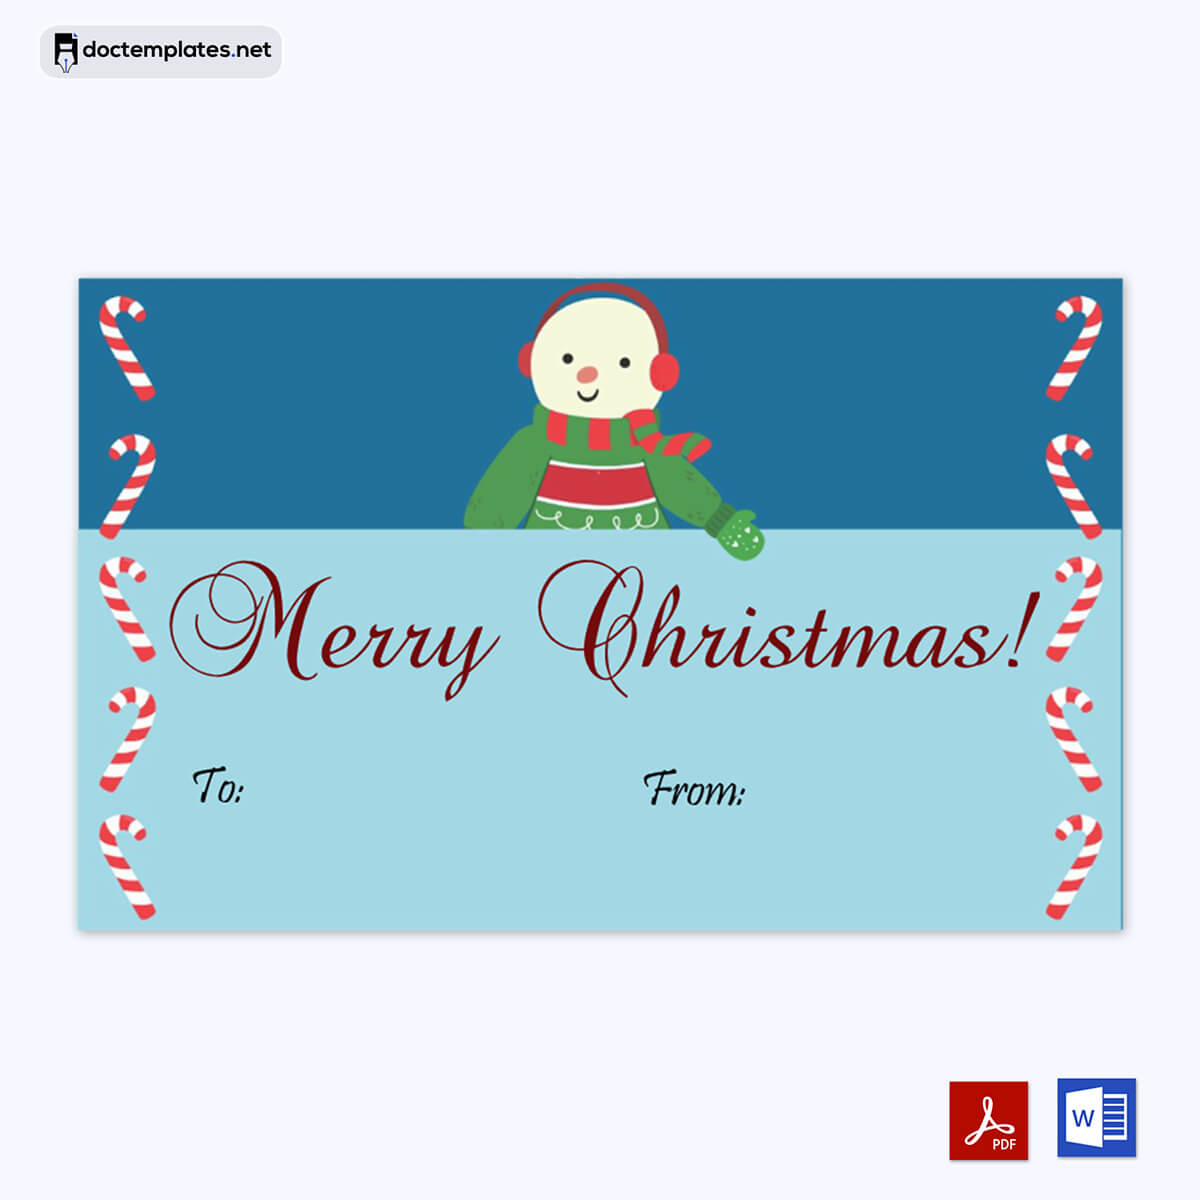 Image of Gift tags Printable
Gift tags Printable
02